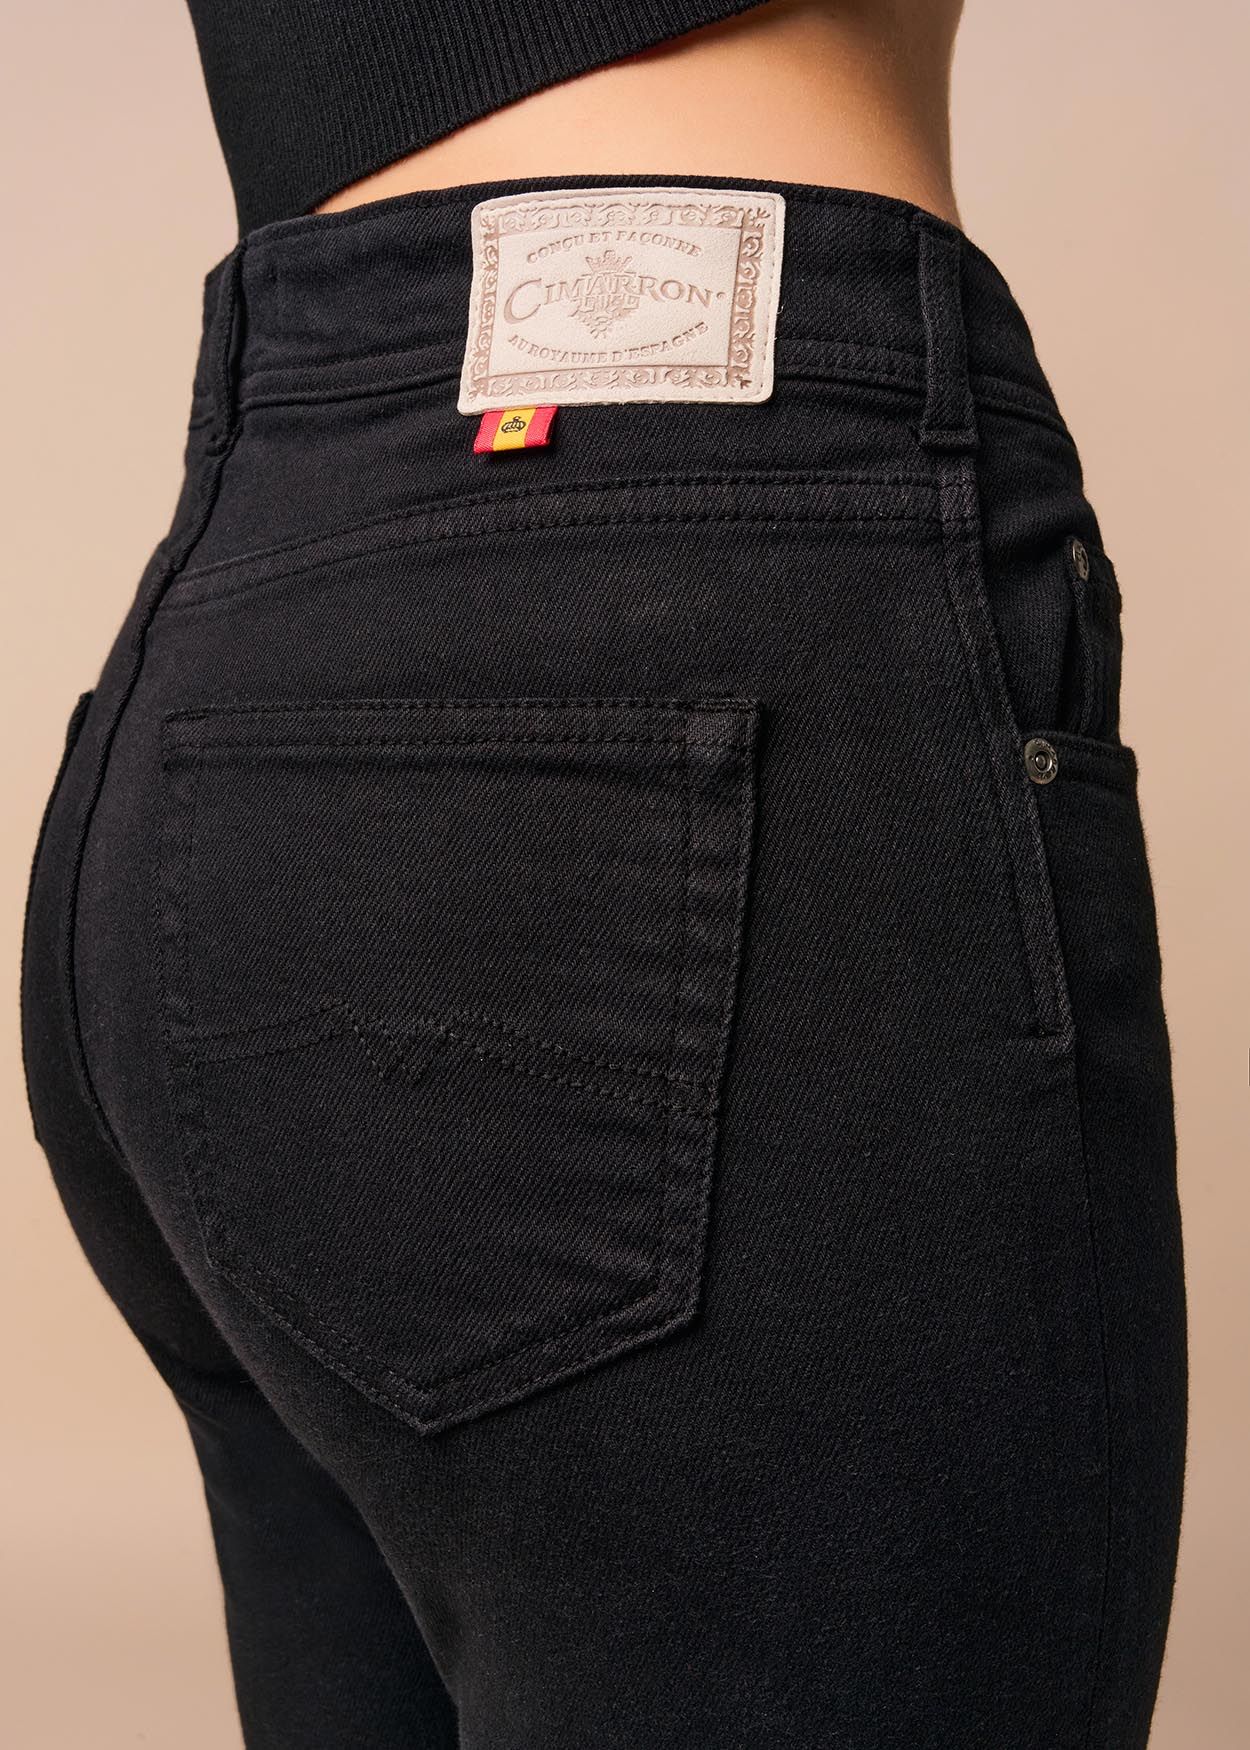 NOUFLORE BEATRICE - Jeans | Slim Fit - Taille Moyenne | Taille en pouces Cimarron